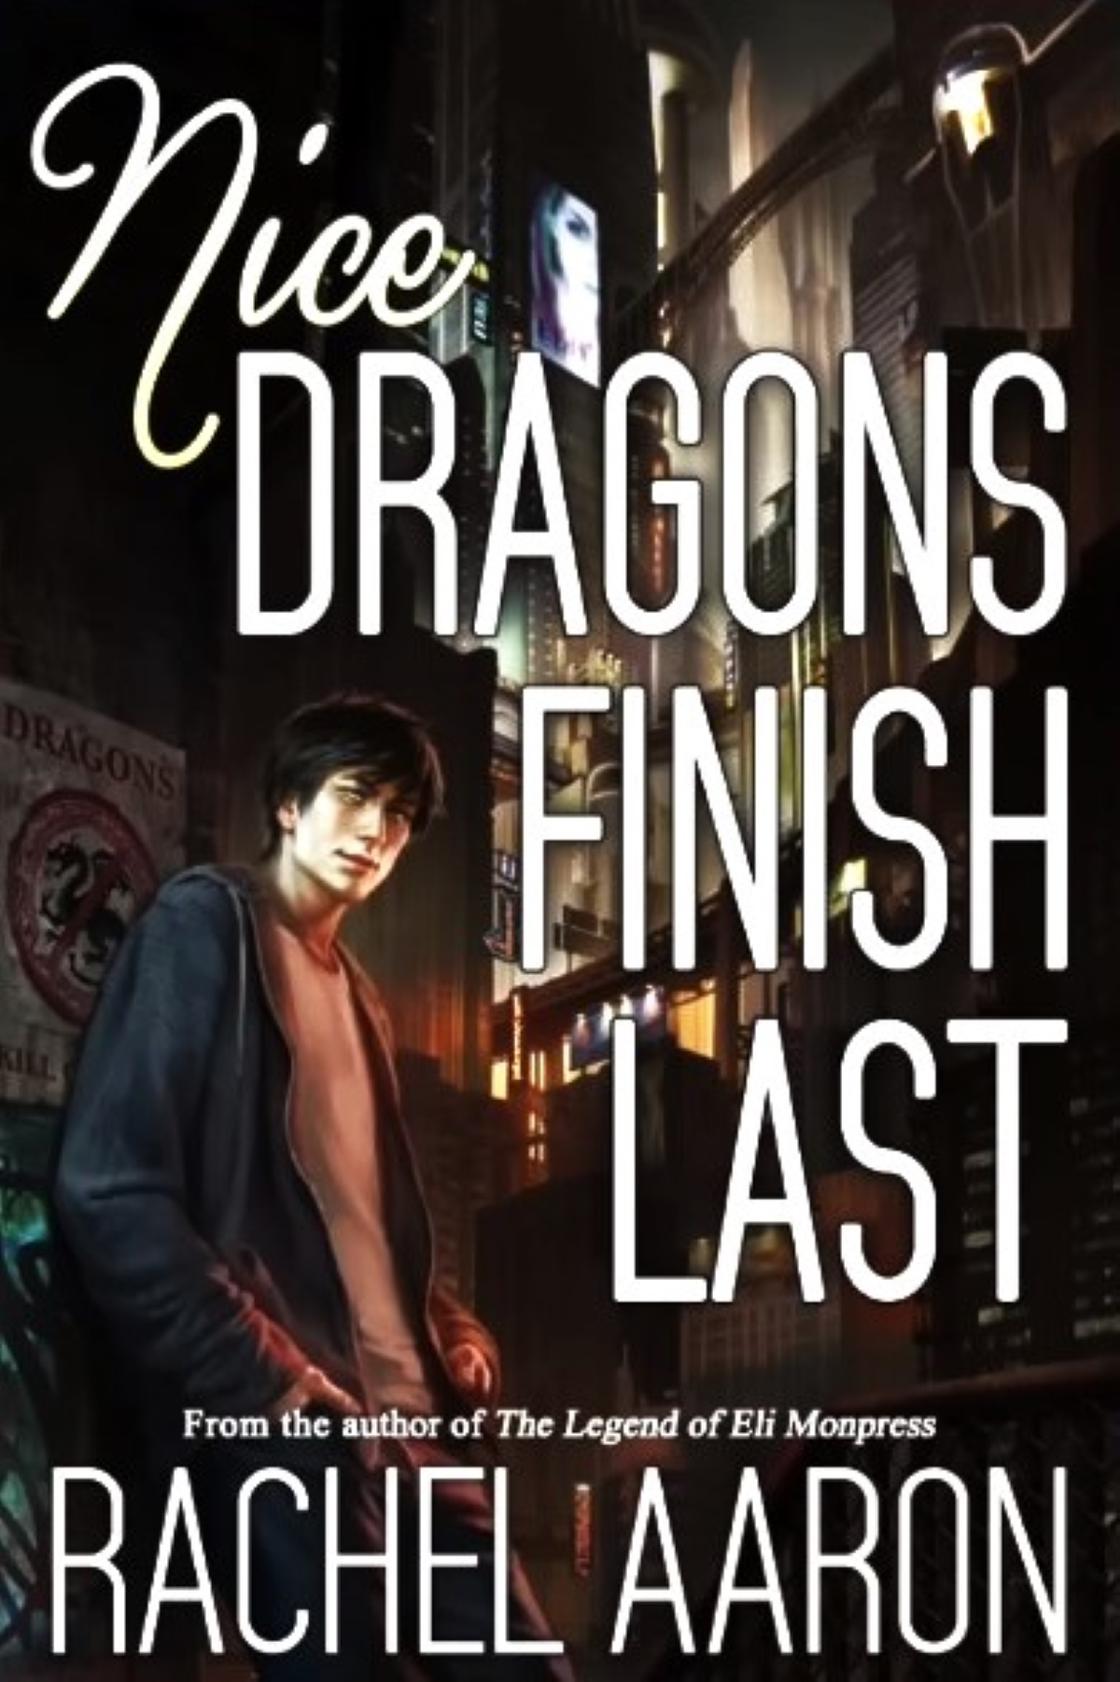 Обложка романа «Хорошие драконы финишируют последними»